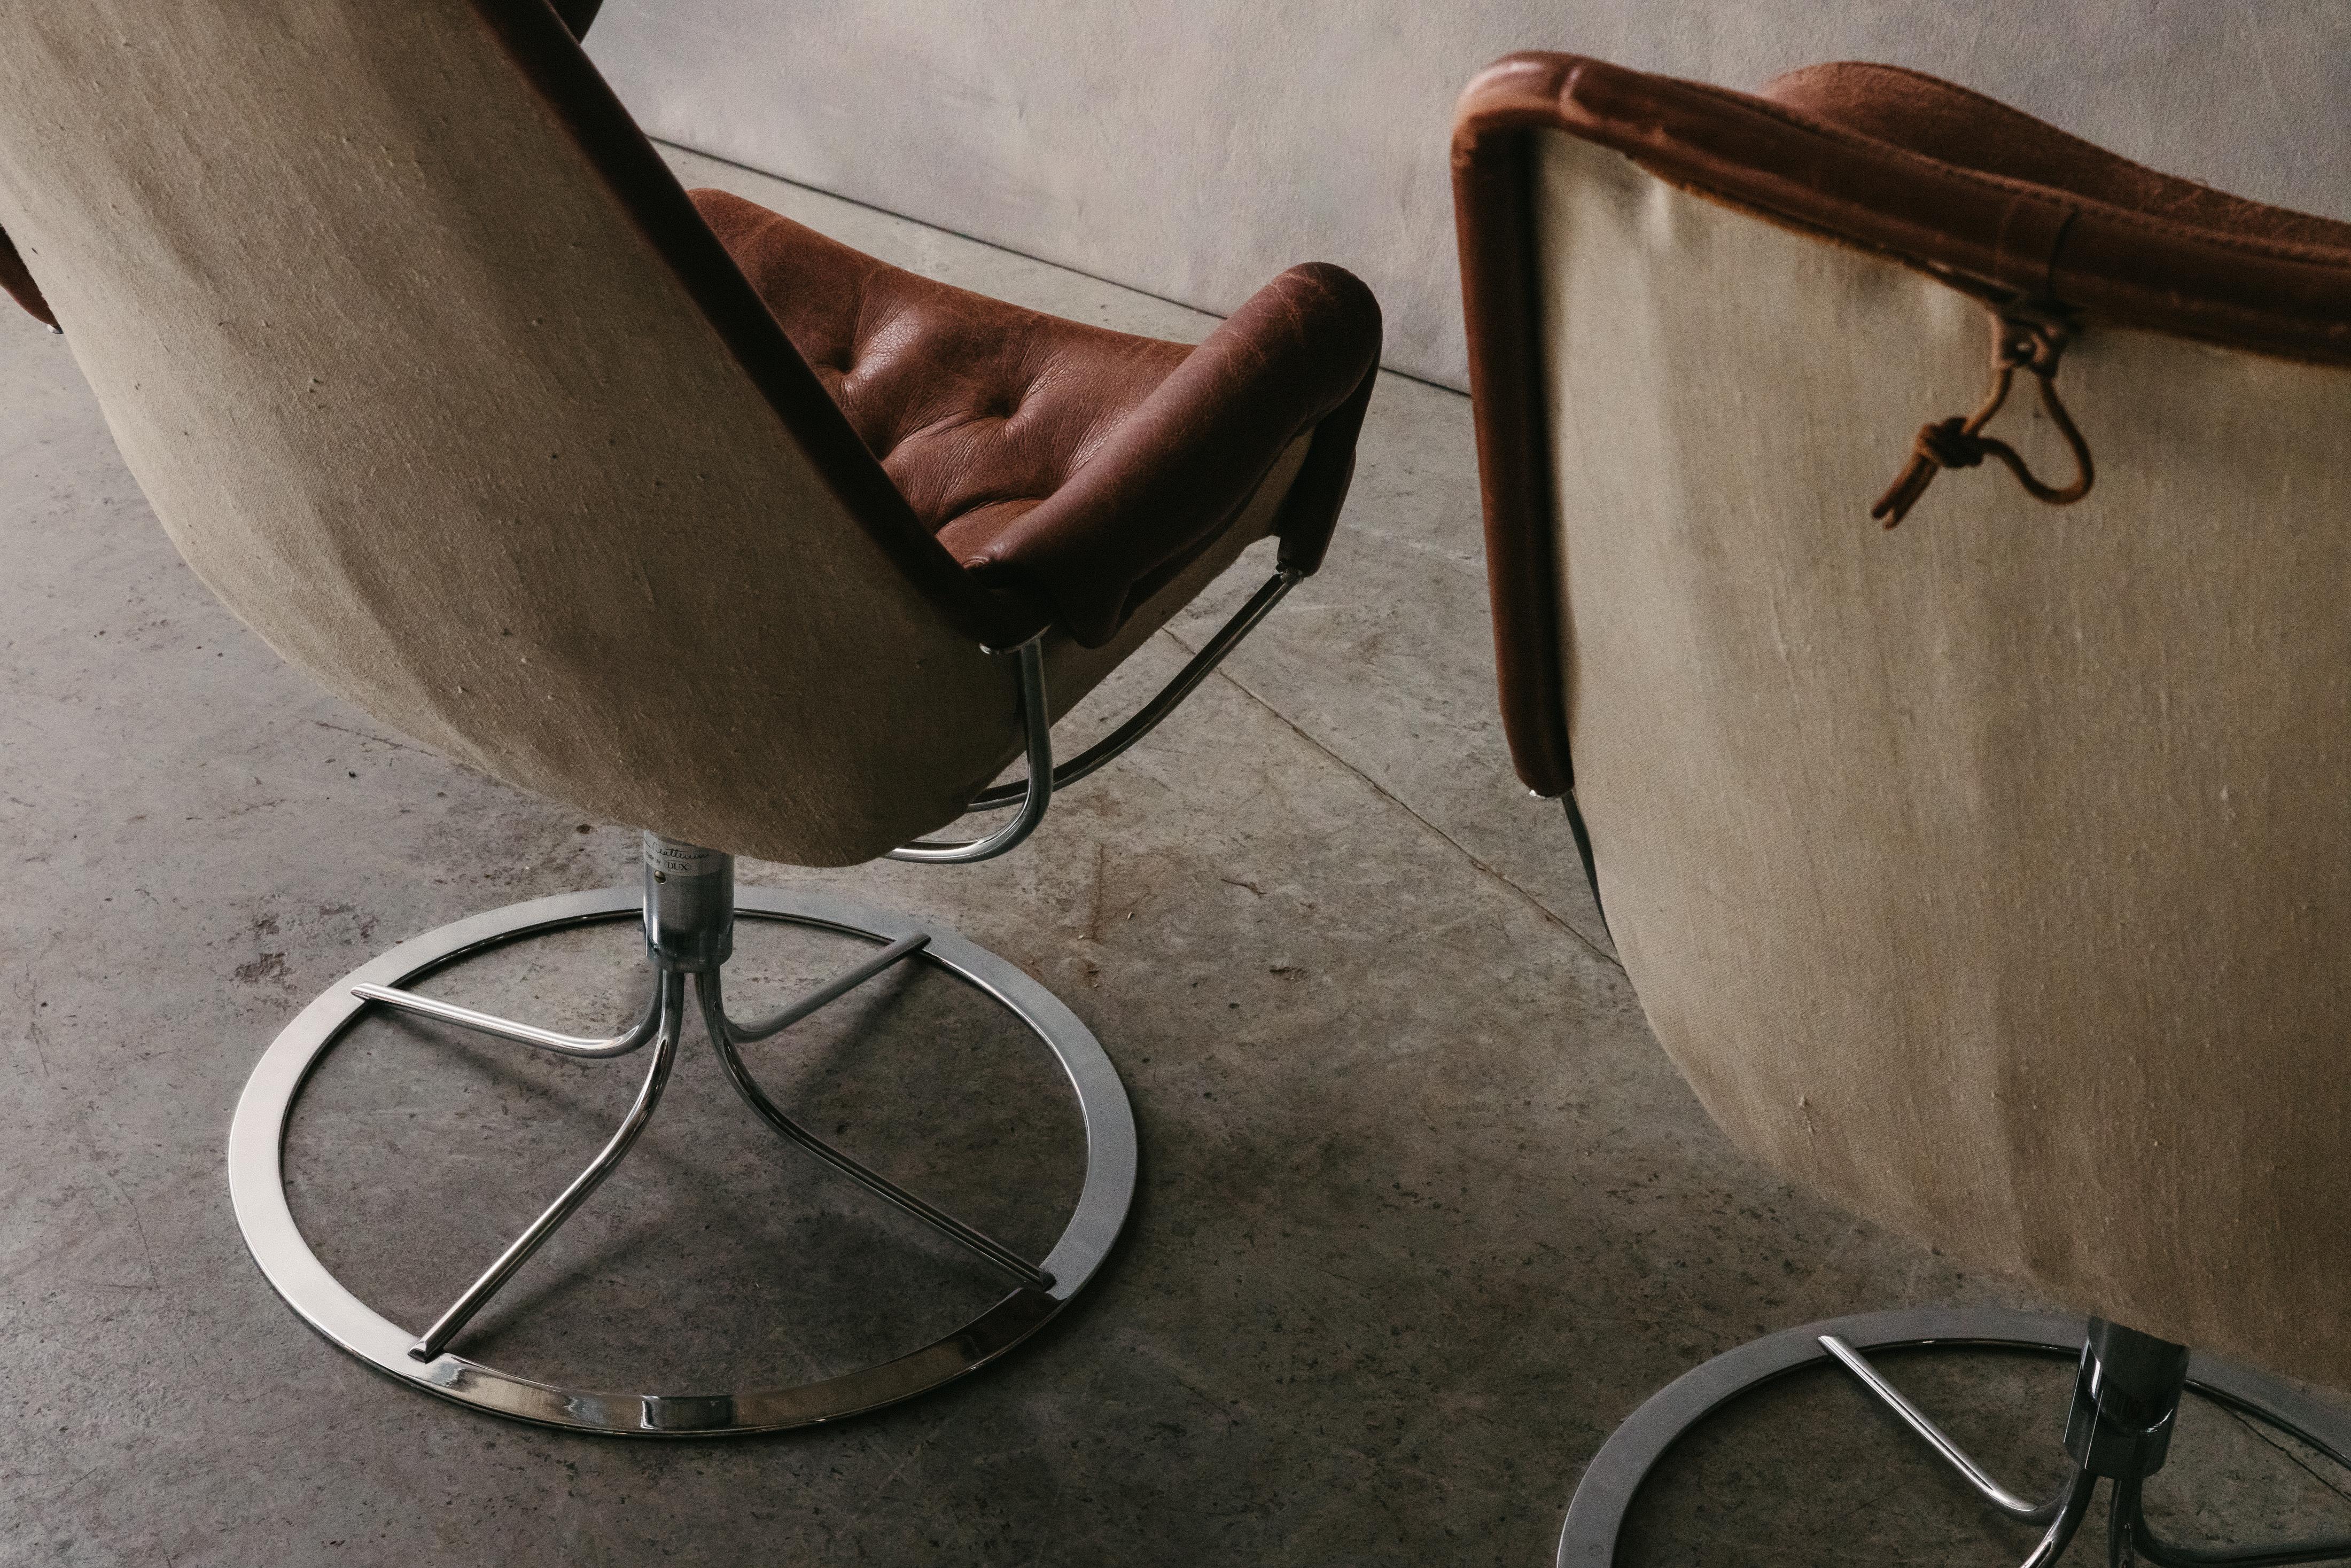 Vintage Paire de chaises longues Jetson de Bruno Mathsson, Suède, circa 1980.  Revêtement original en cuir marron sur une base pivotante en acier.  Belle patine et utilisation.